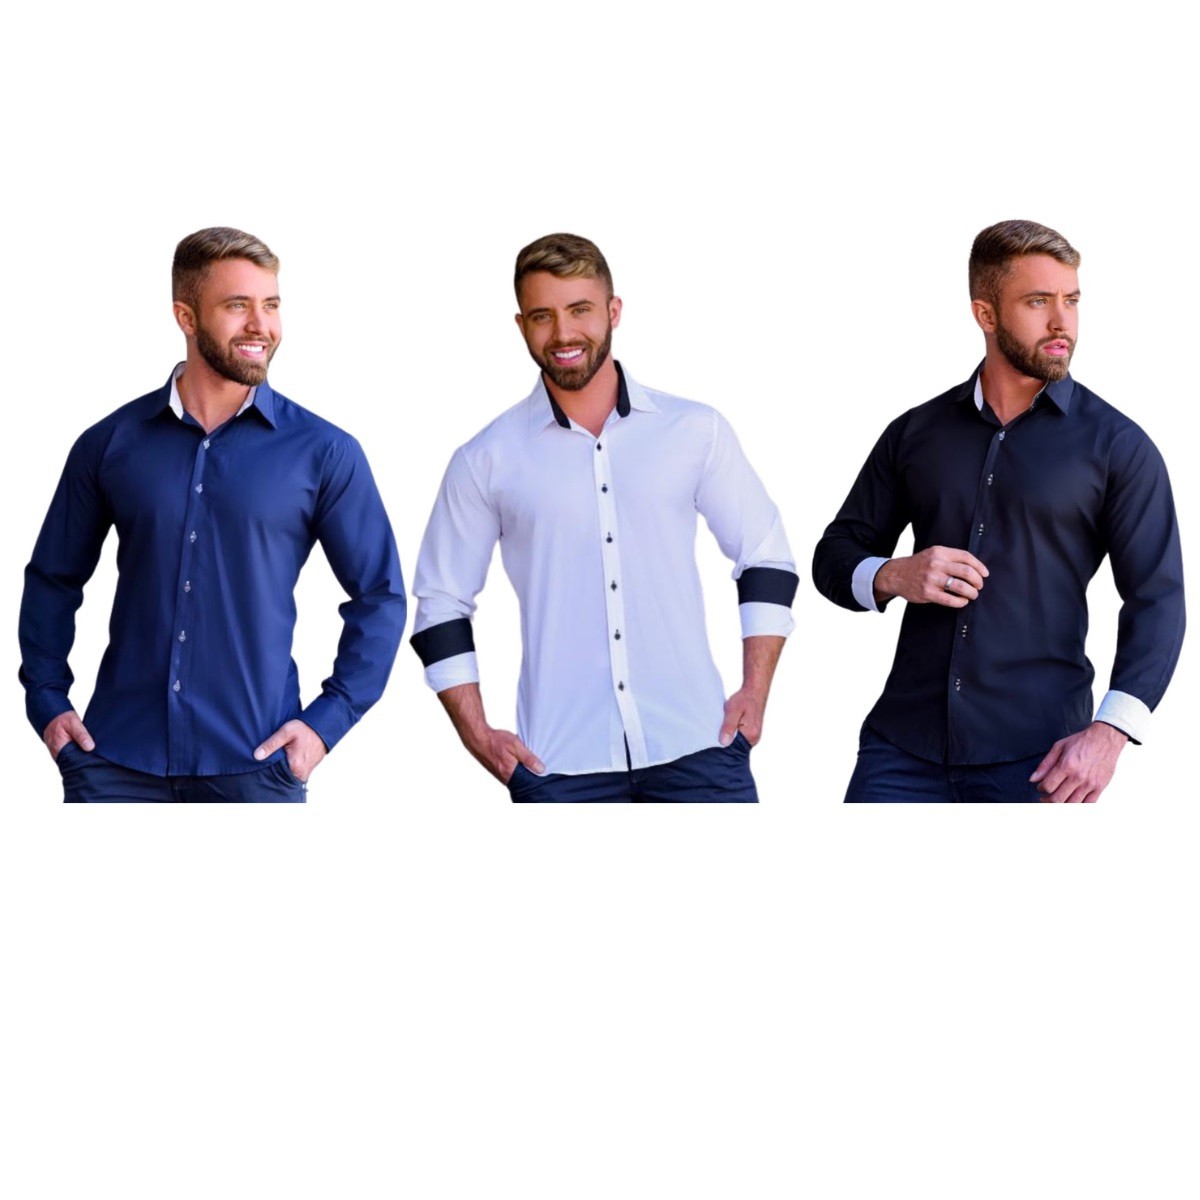 Camisa Social Masculina Slim Fit - lmvshop-camisa social slim masculina, camisa mascuina social slim,camisa slim masculina